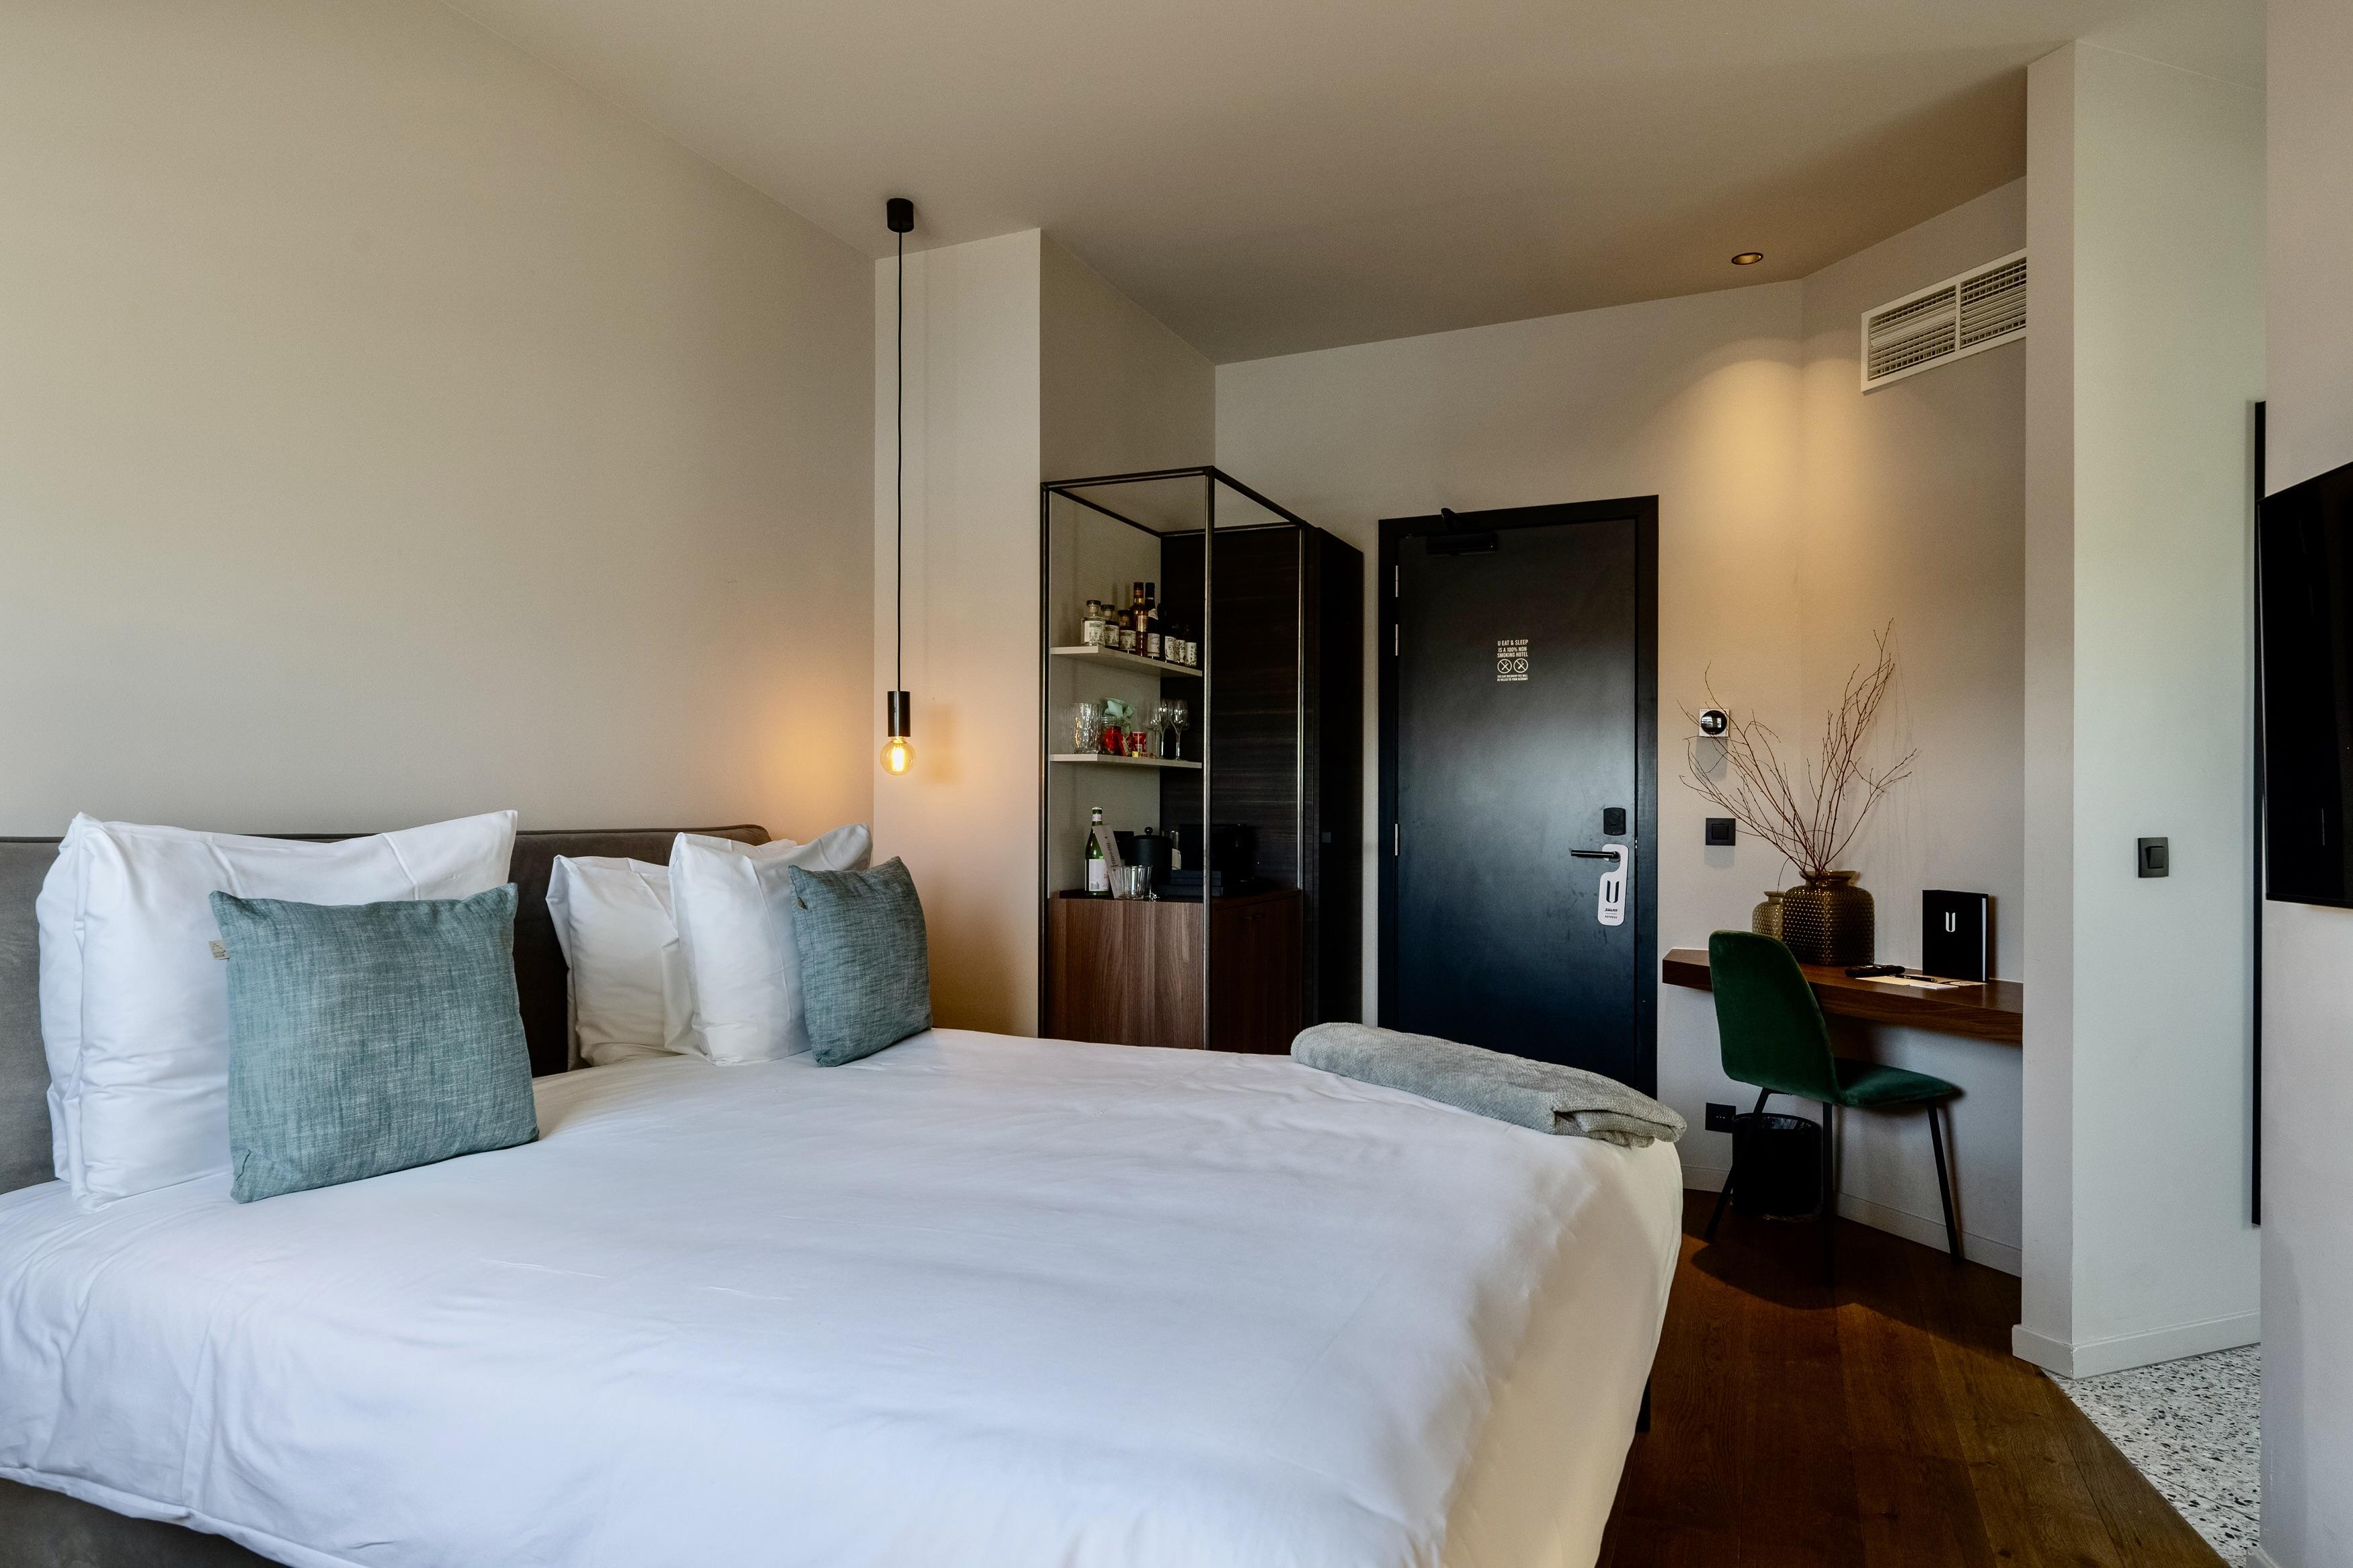 De Cosy Room is de plaats waar gasten kunnen ontspannen en genieten van een goede nachtrust.